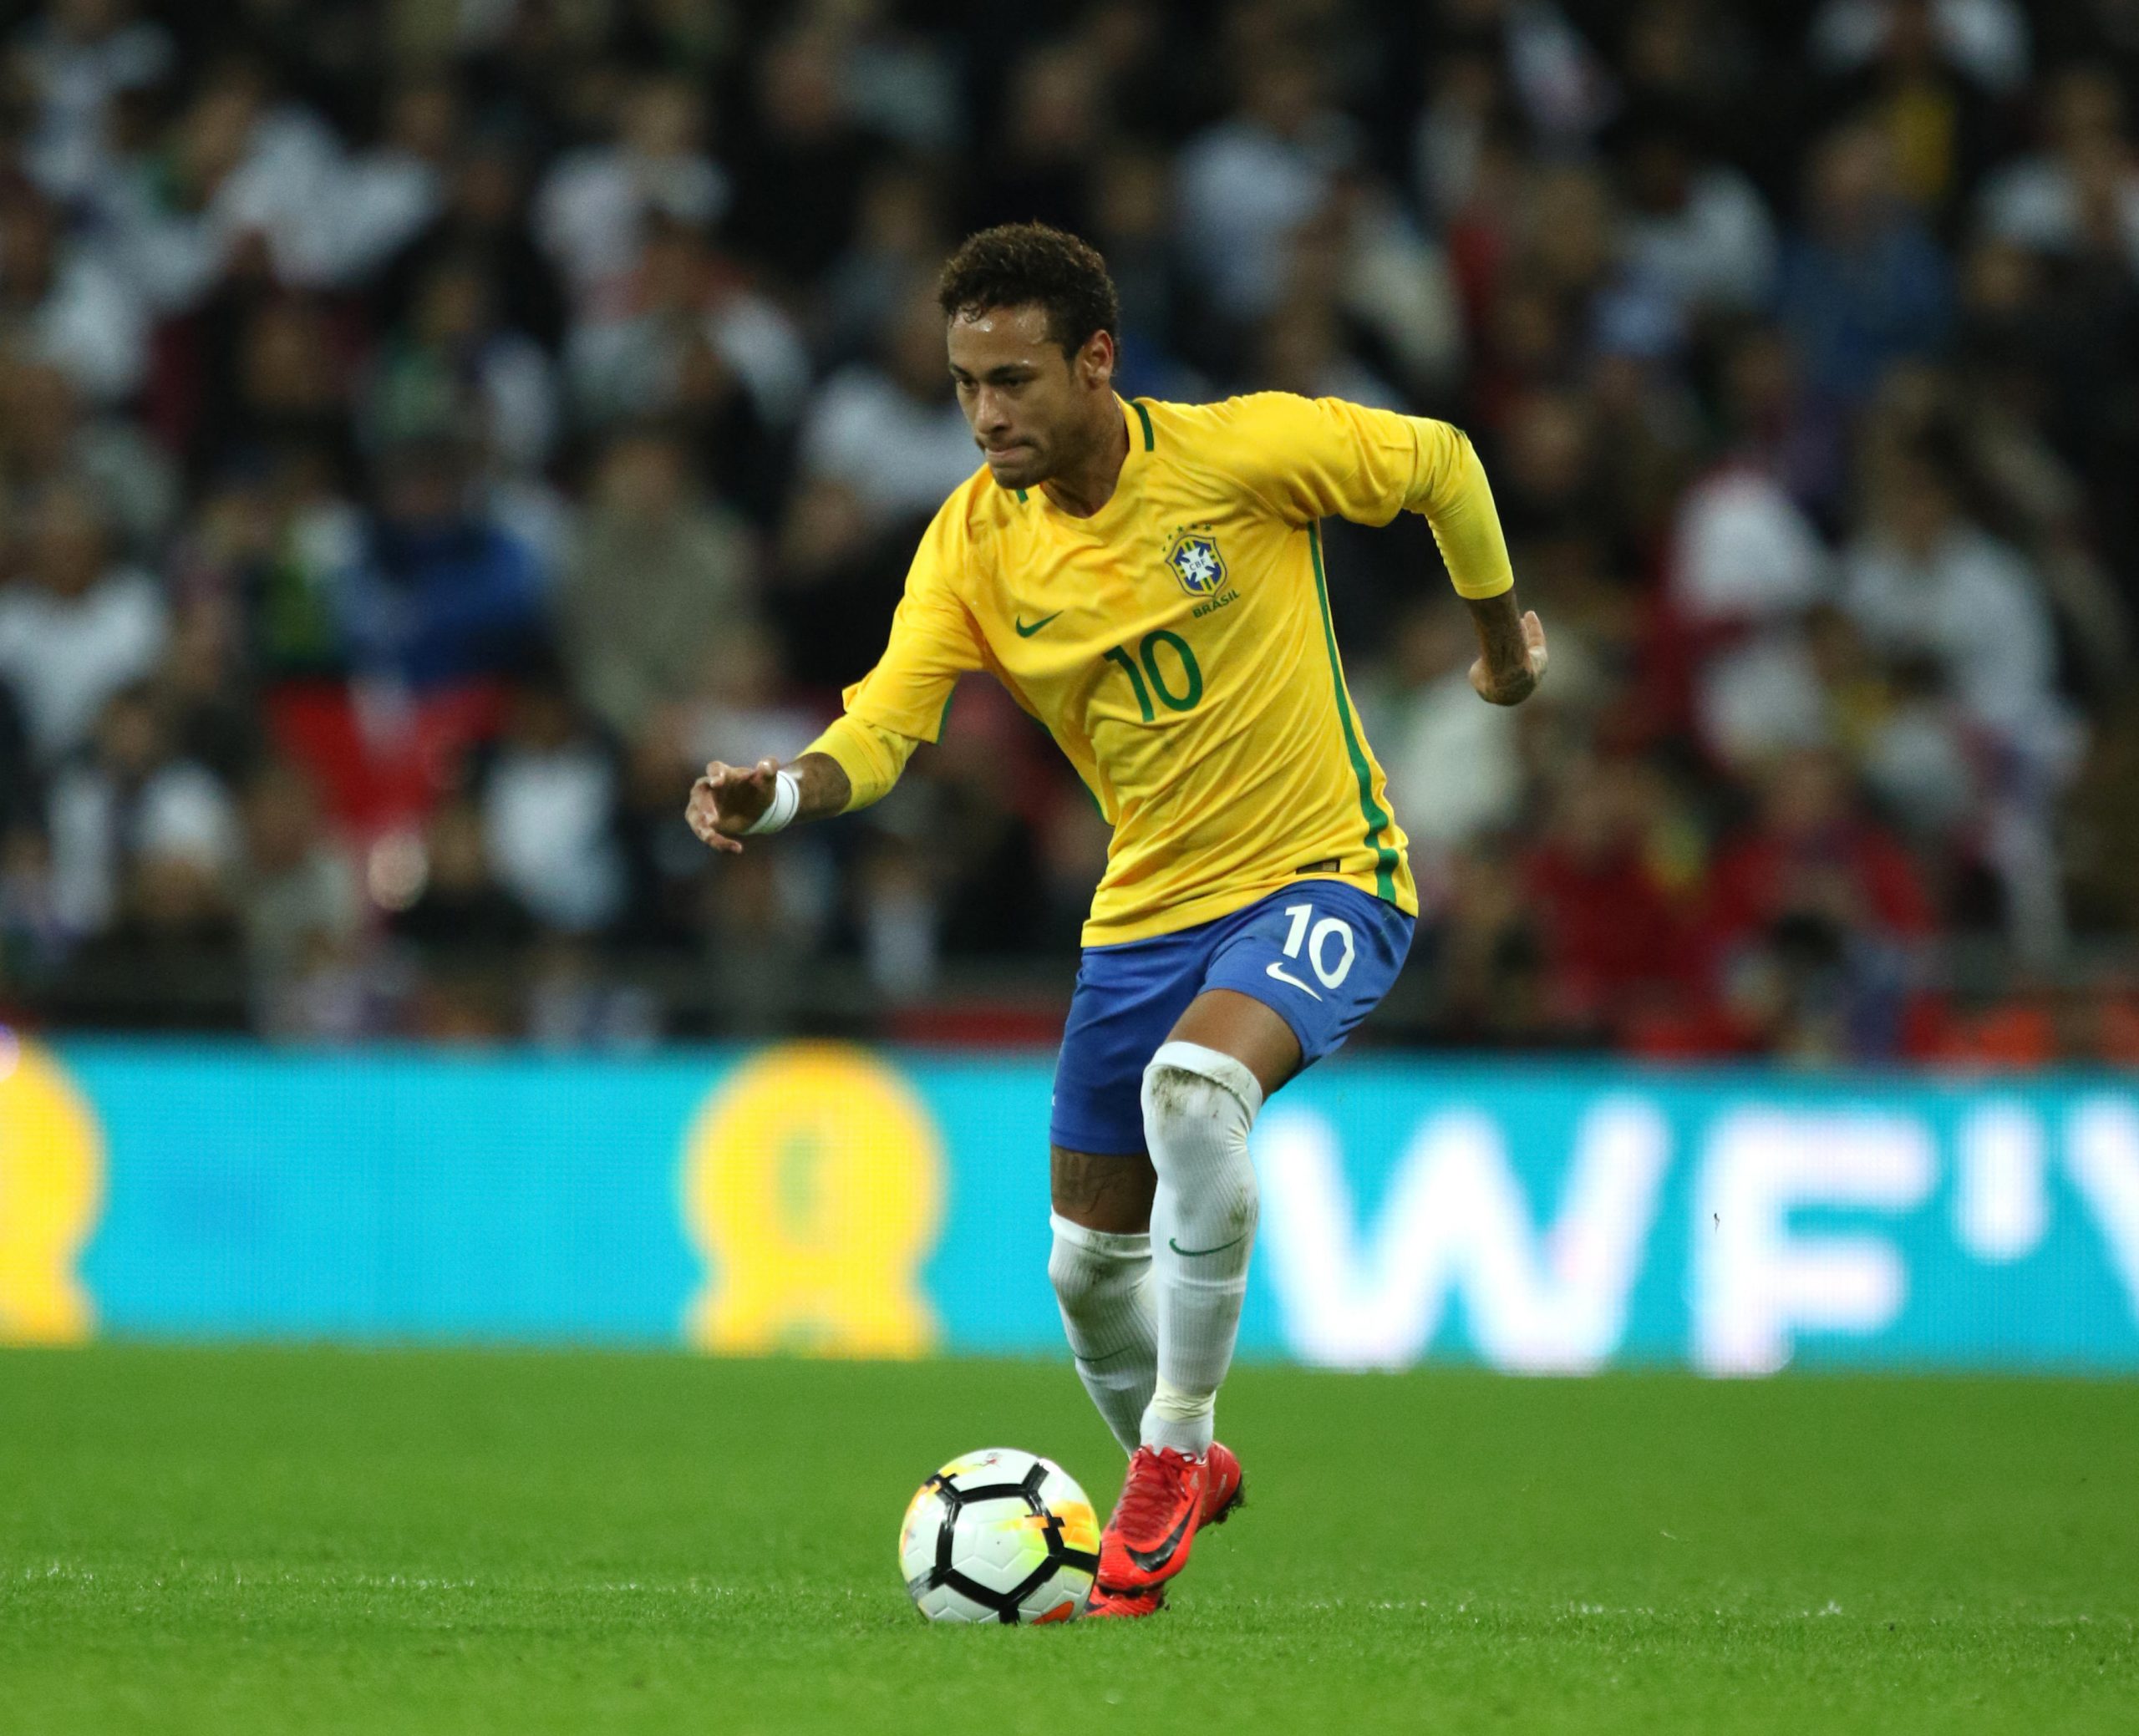 1. Neymar Jr. - wide 8